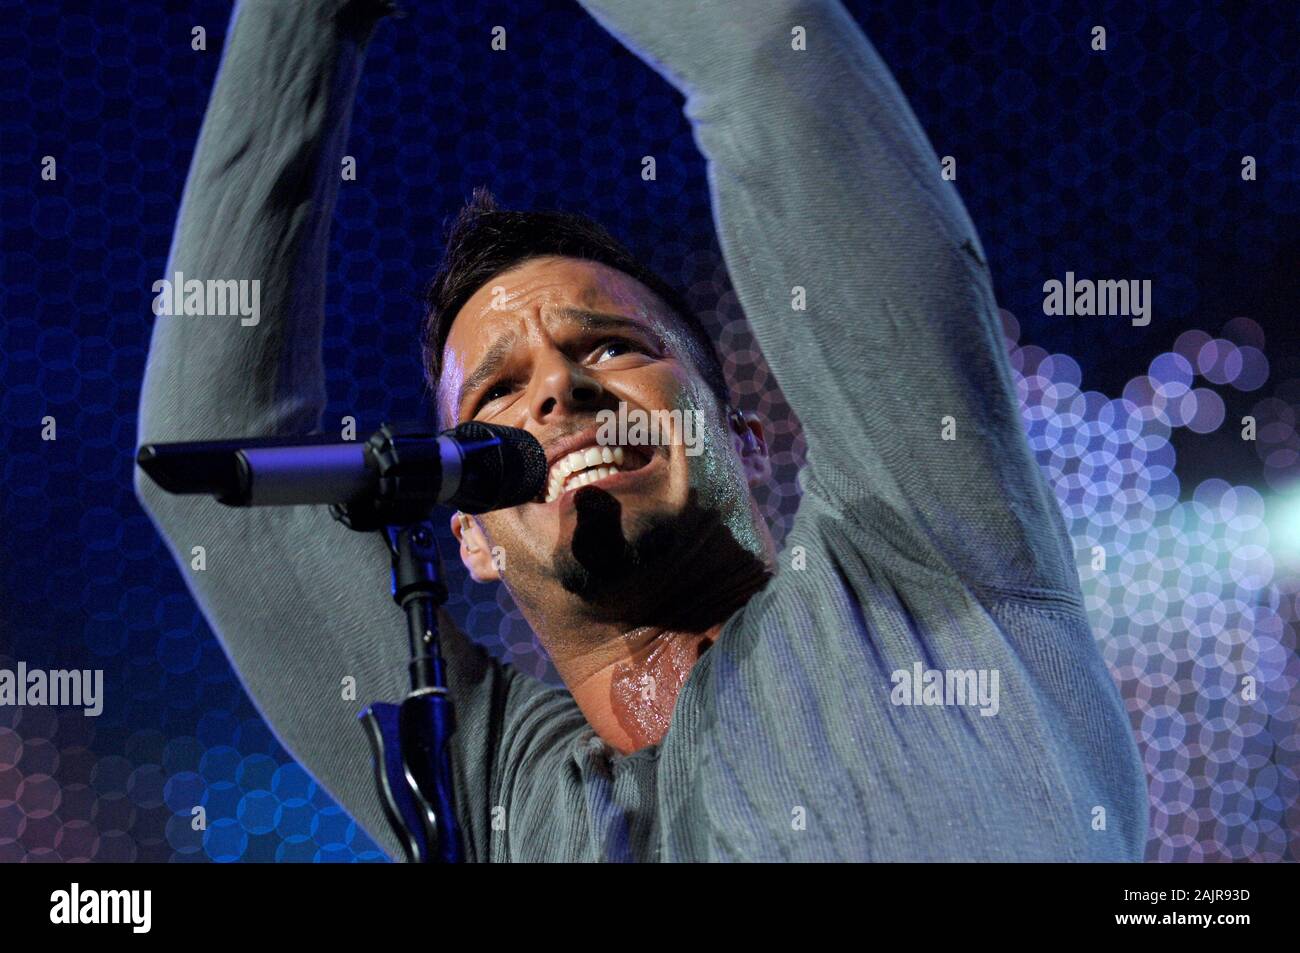 Milano Italia , 06 maggio 2006 , il concerto dal vivo di Ricky Martin al DatchForum Assago : Il cantante Ricky Martin durante il concerto Foto Stock